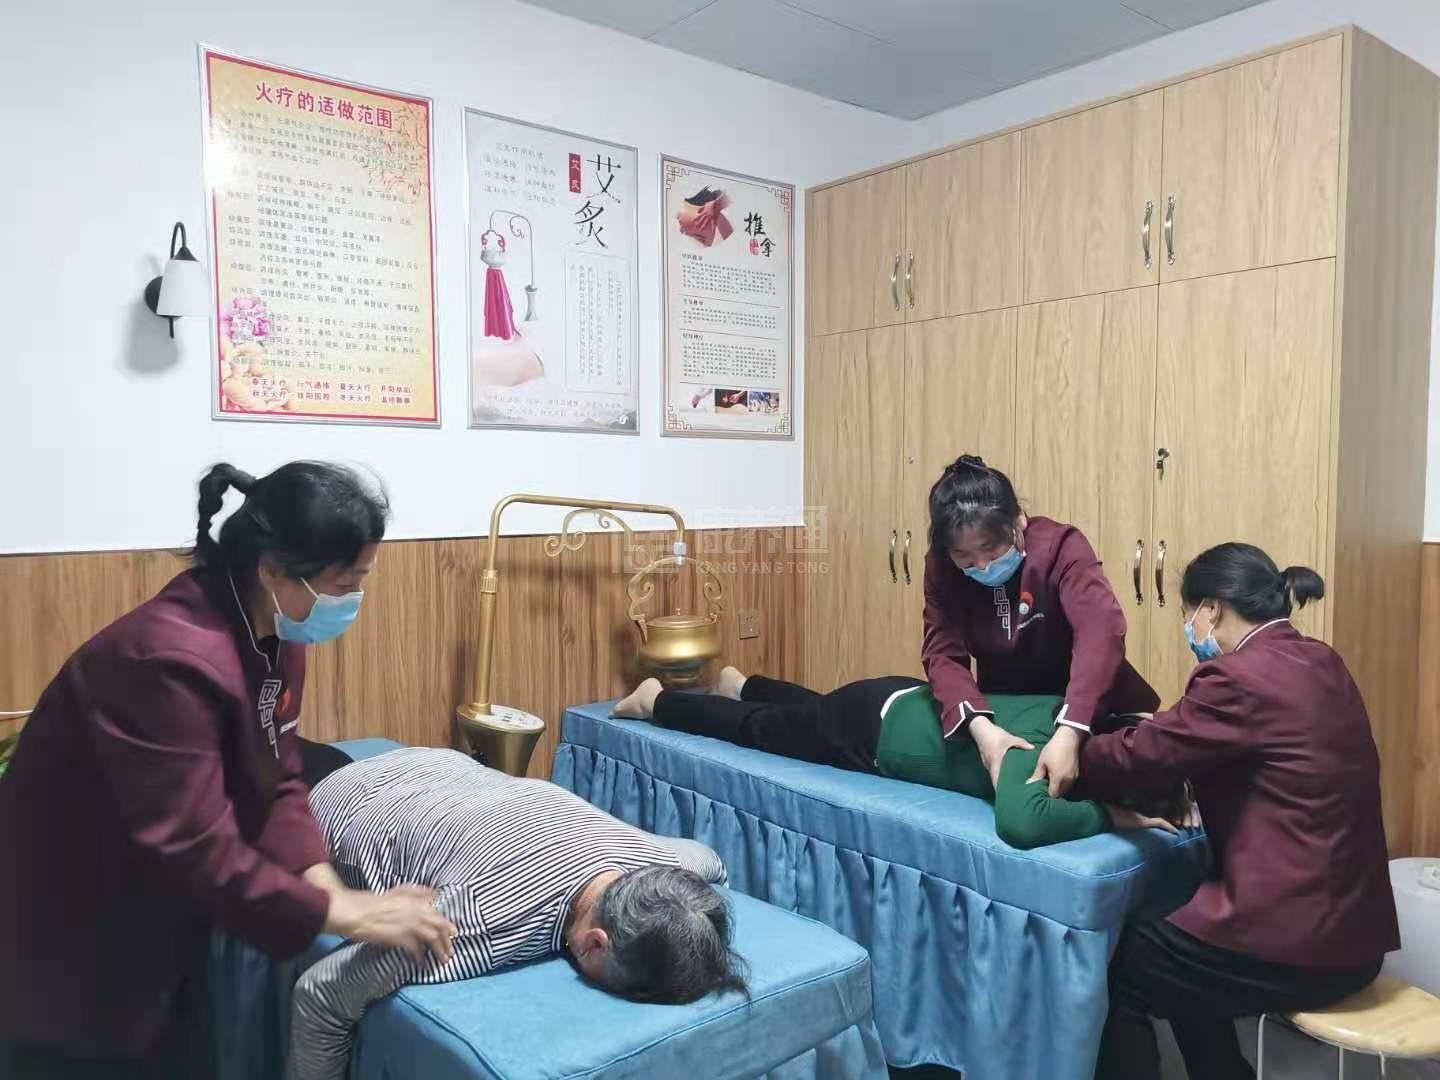 衡阳市蒸湘区聚福缘老年养护中心服务项目图6让长者体面而尊严地生活